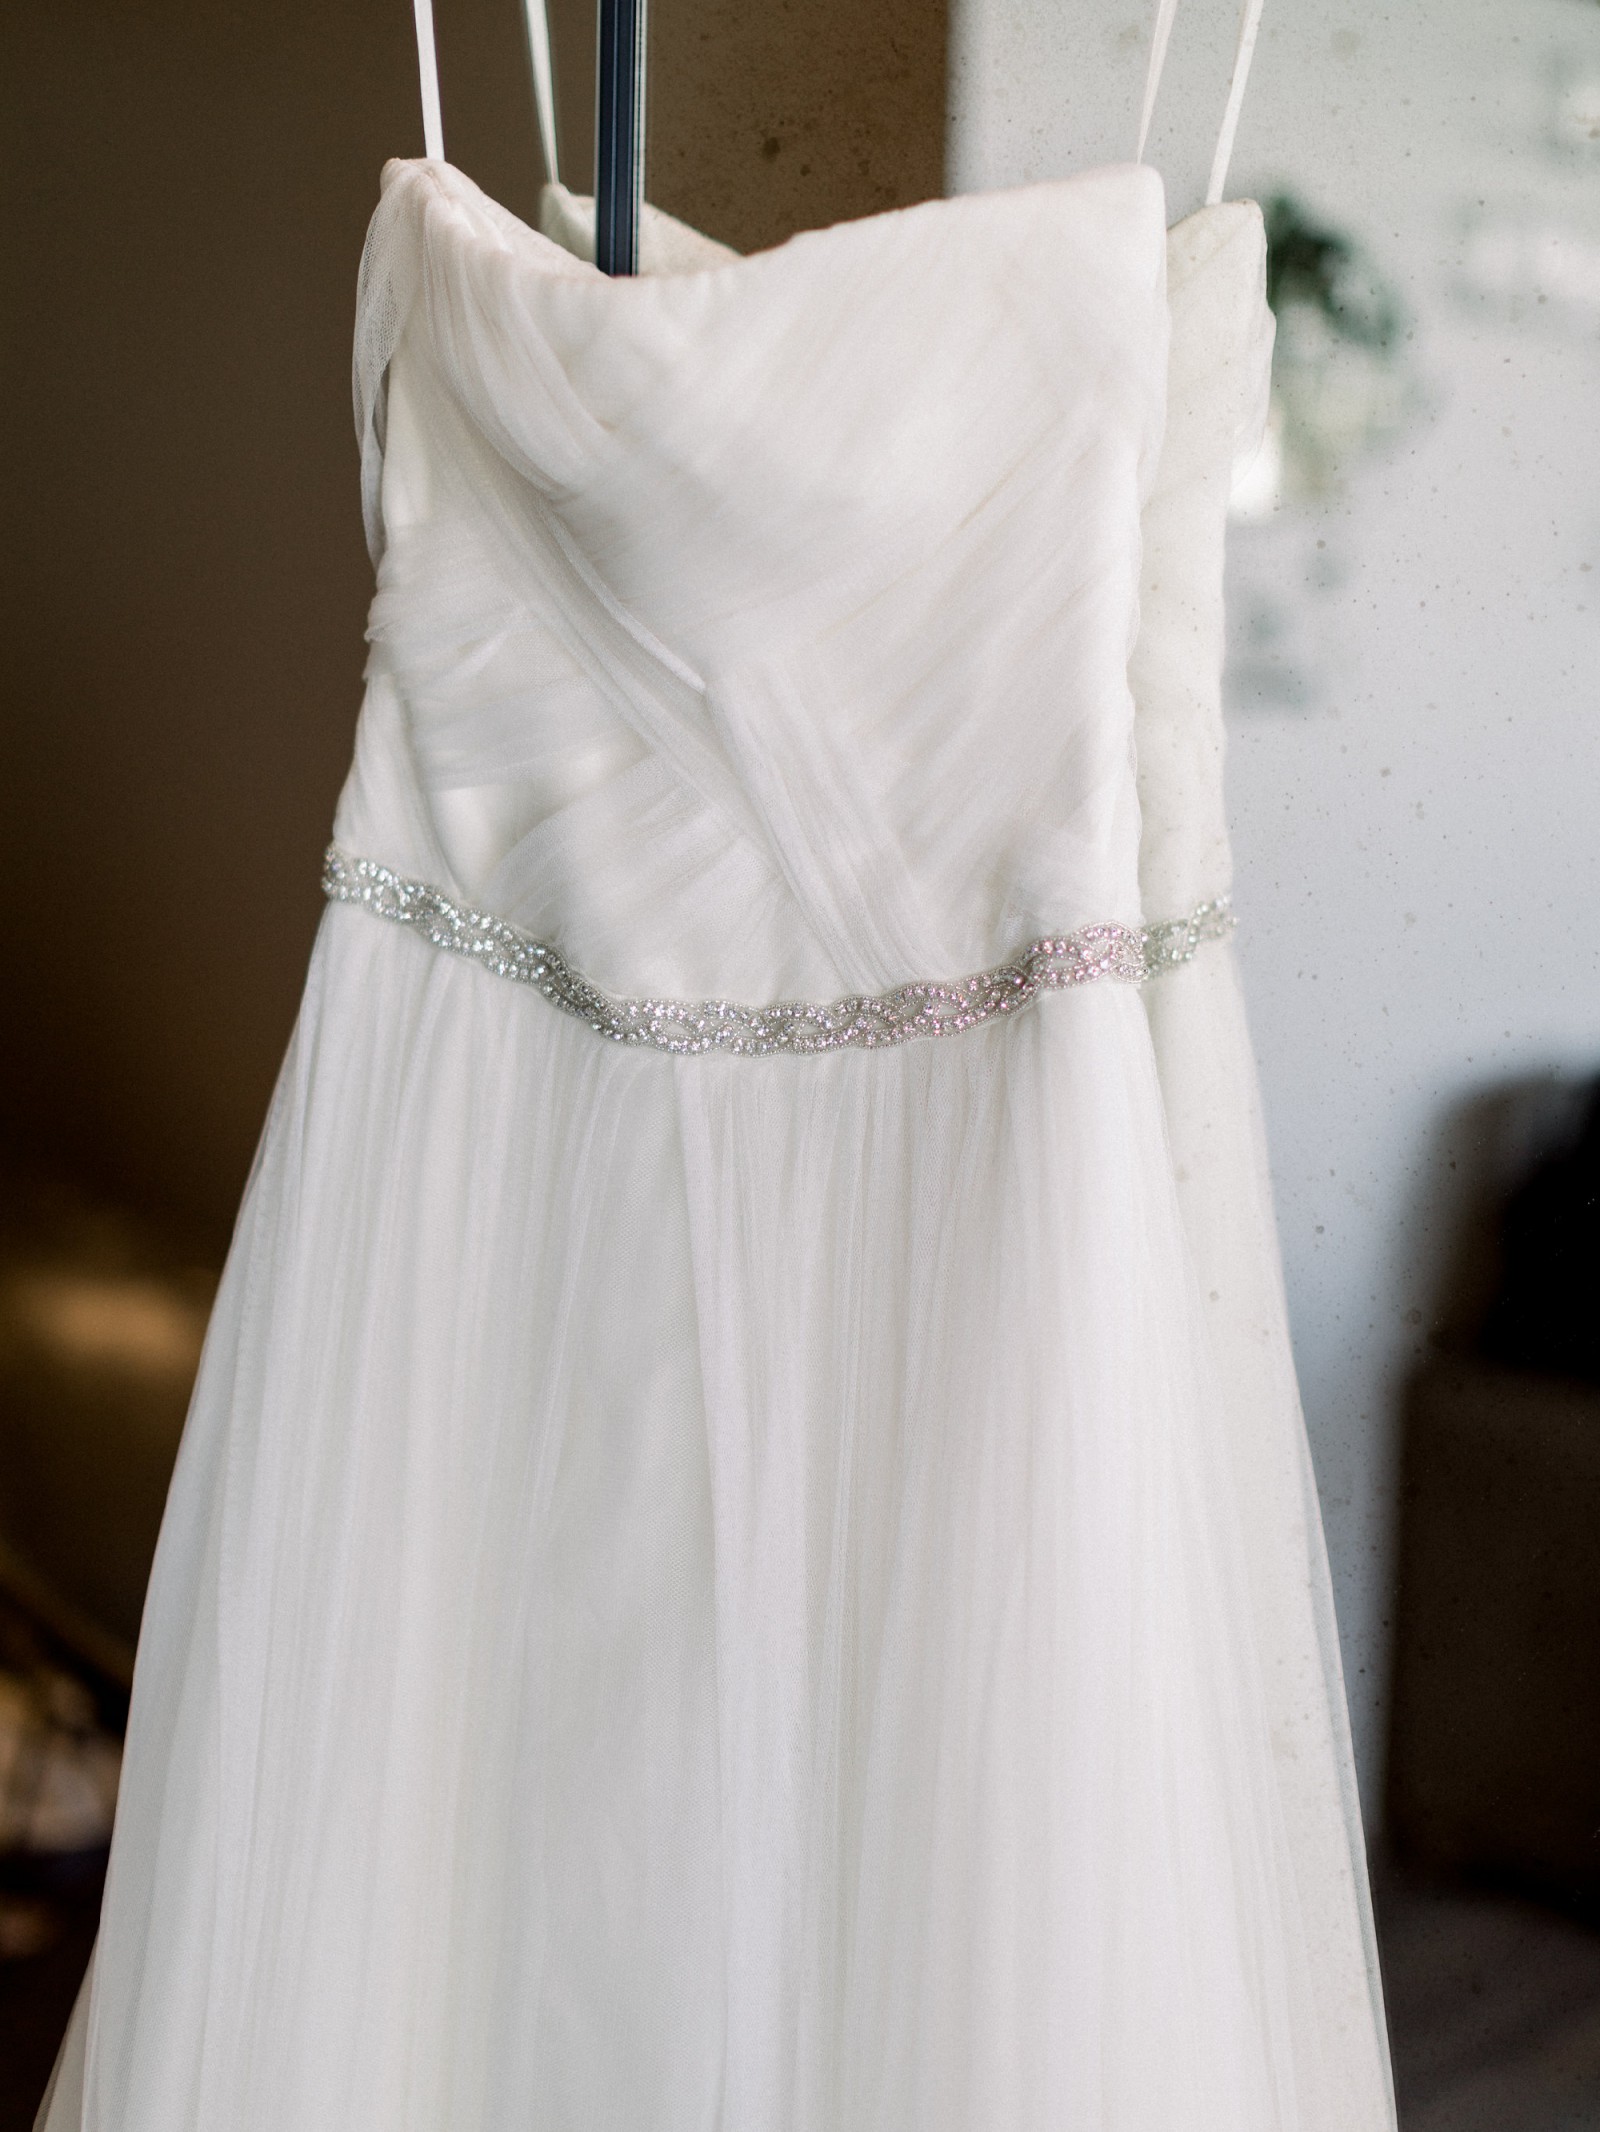 Vera Wang Delaney Used Wedding Dress - Stillwhite